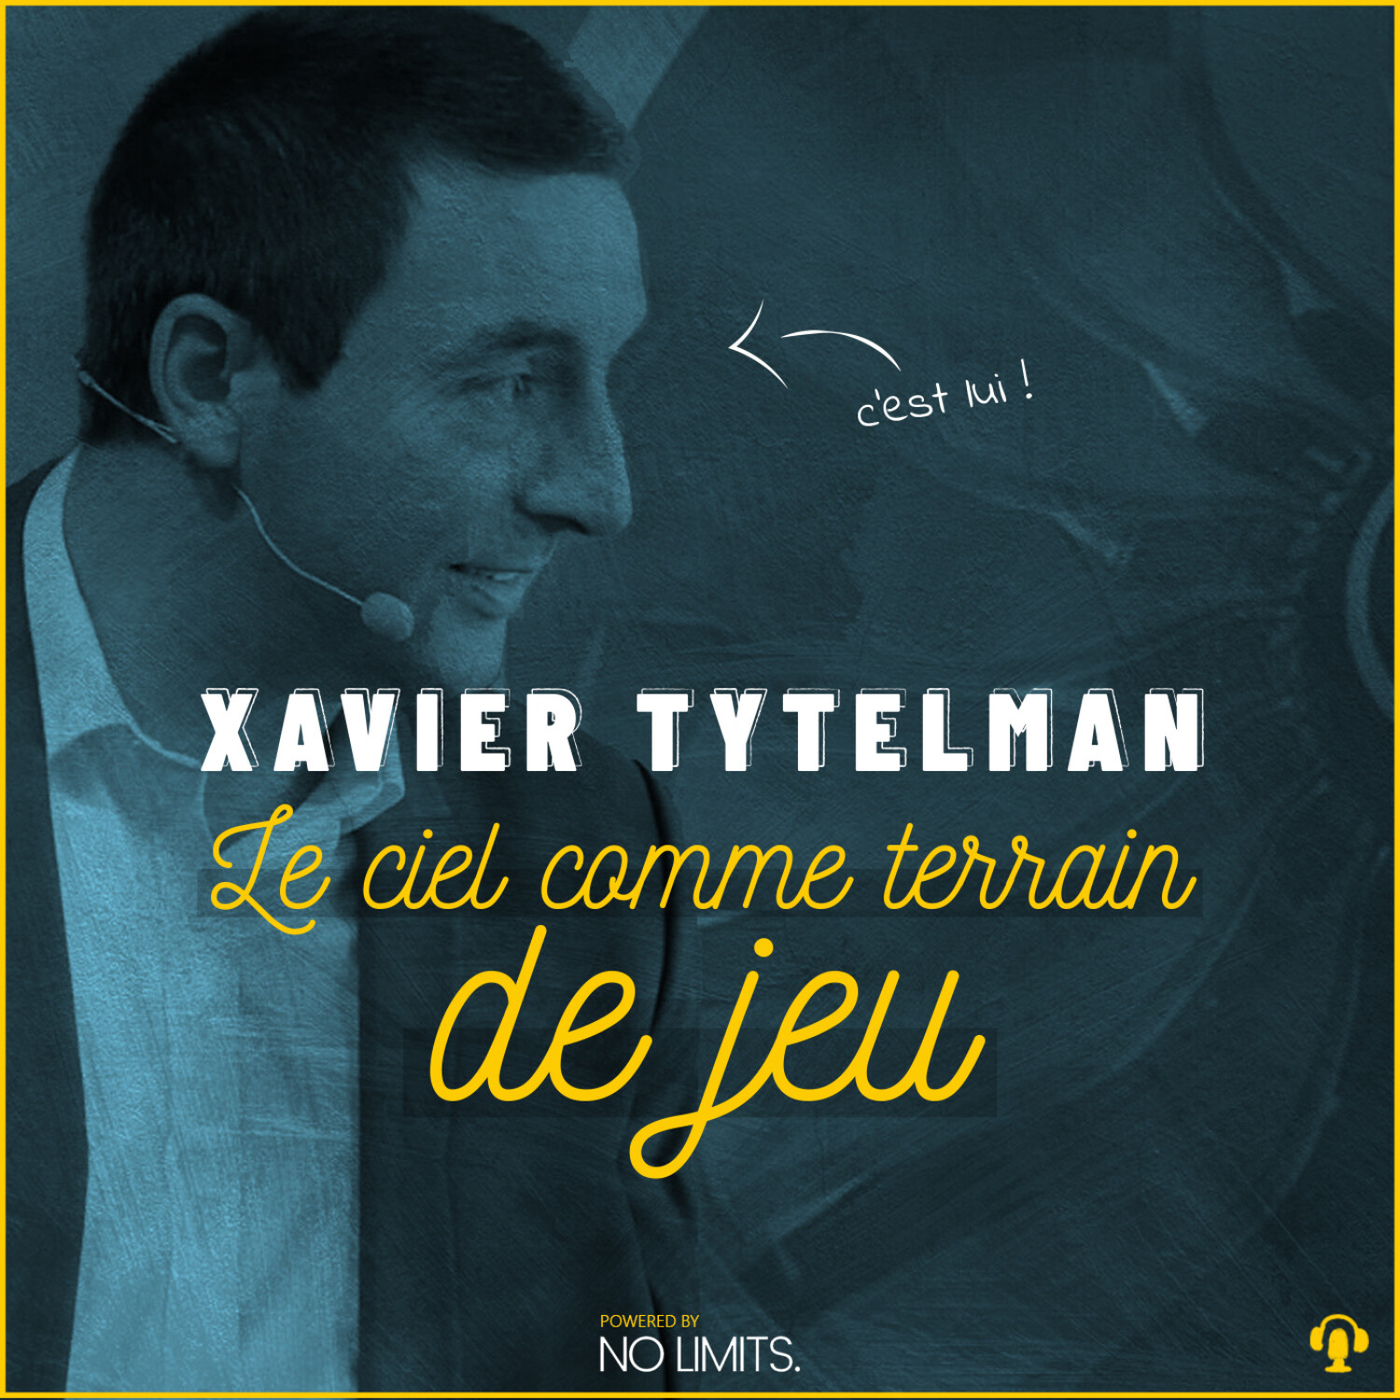 #10 - Xavier Tytelman : Le ciel, comme terrain de jeu